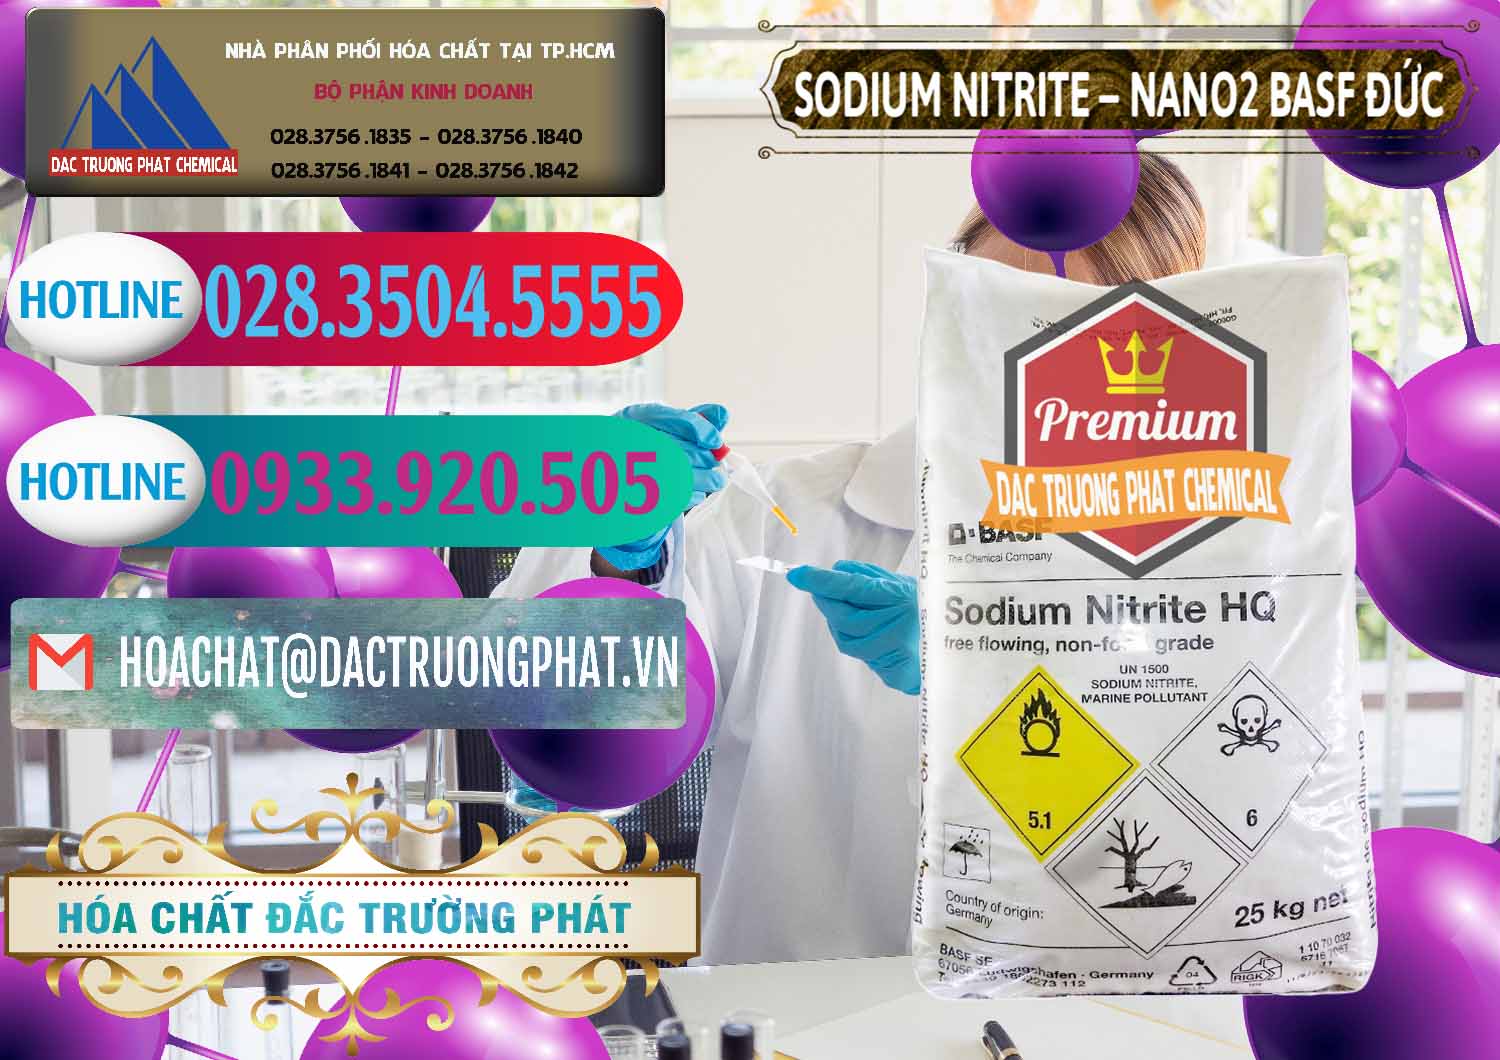 Chuyên bán & phân phối Sodium Nitrite - NANO2 Đức BASF Germany - 0148 - Chuyên bán _ cung cấp hóa chất tại TP.HCM - truongphat.vn